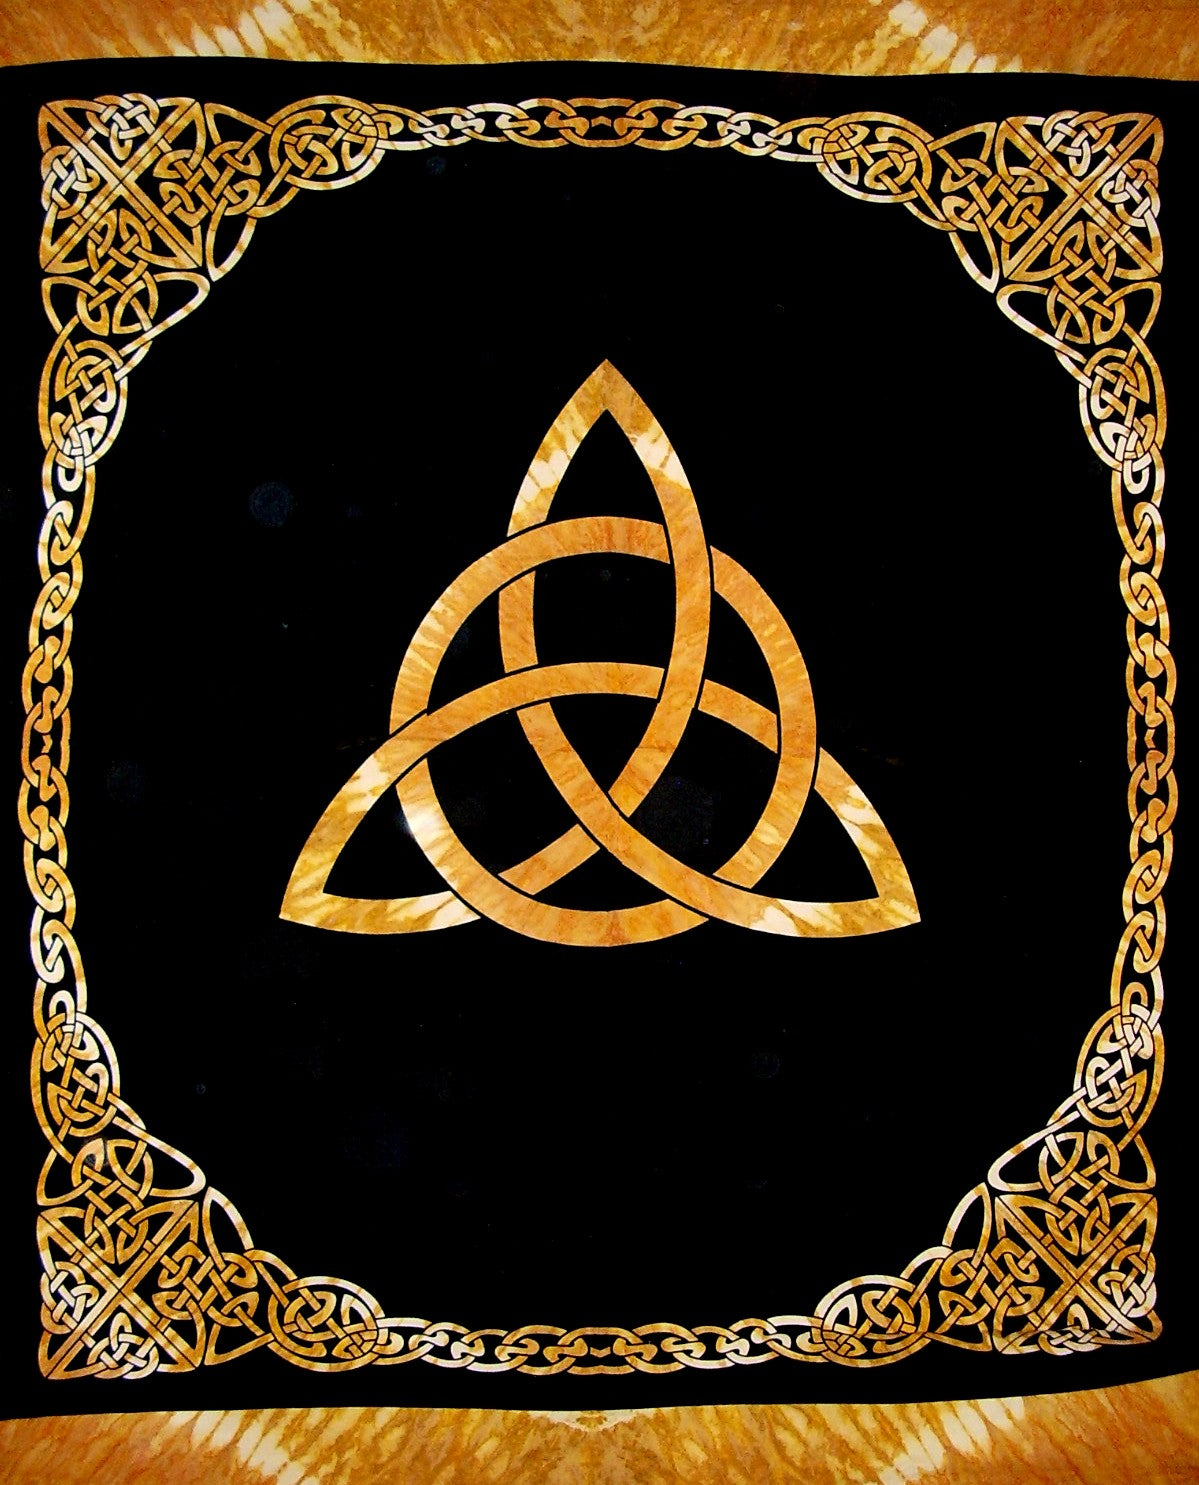 Keltischer Dreifaltigkeitsknoten-Wandteppich, schwere Baumwolle, 244,8 x 218,4 cm, Batik-Bernstein